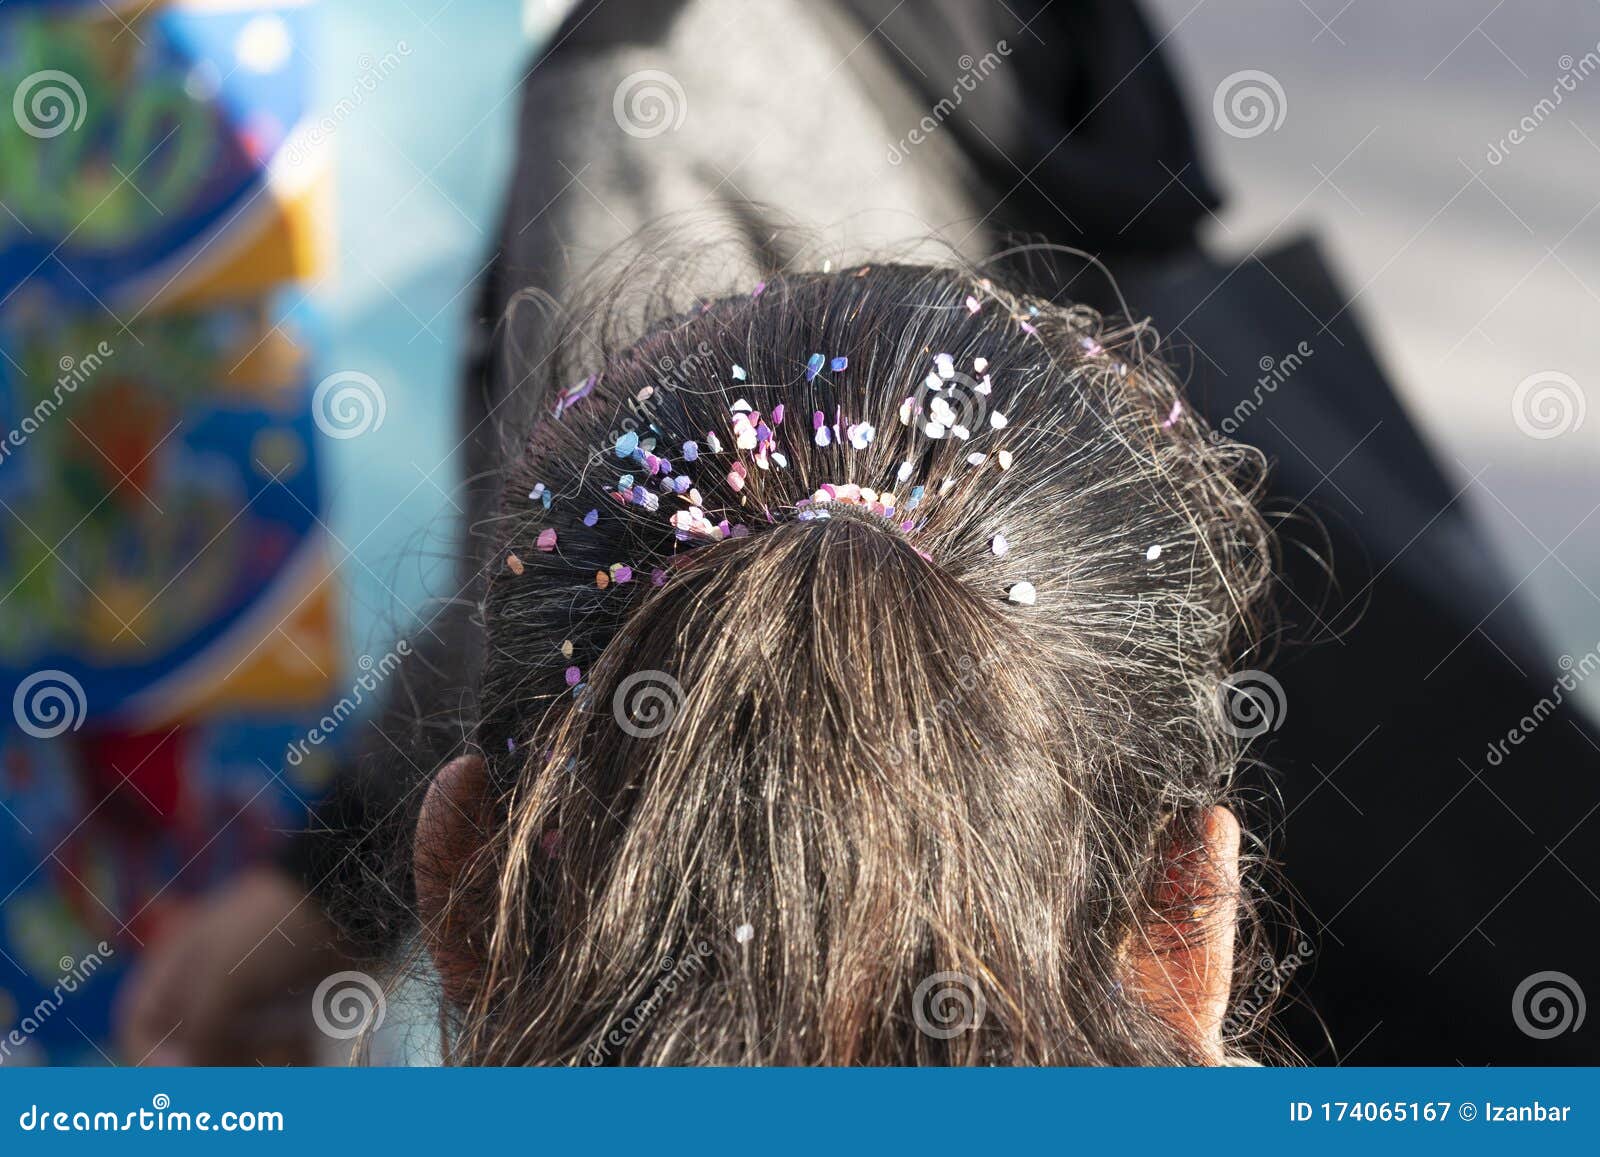 carnival confetti corianders